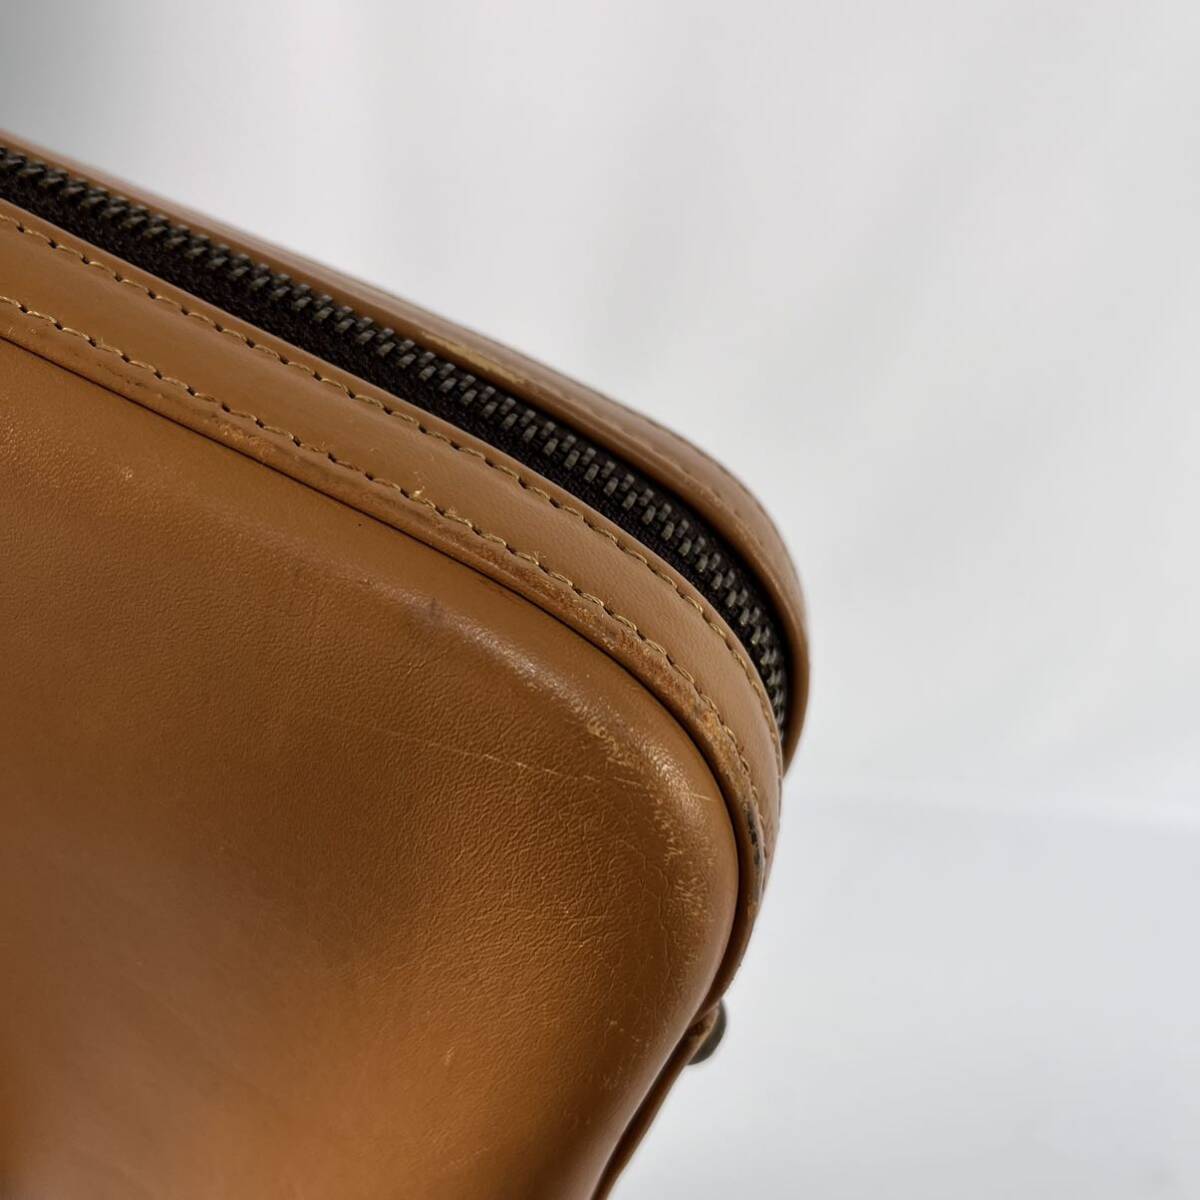 土屋鞄製造所 ビジネスバッグ ブリーフケース ベージュ 革 レザー A4サイズ収納可能 本革 レザーブリーフケース ツチヤカバンの画像8